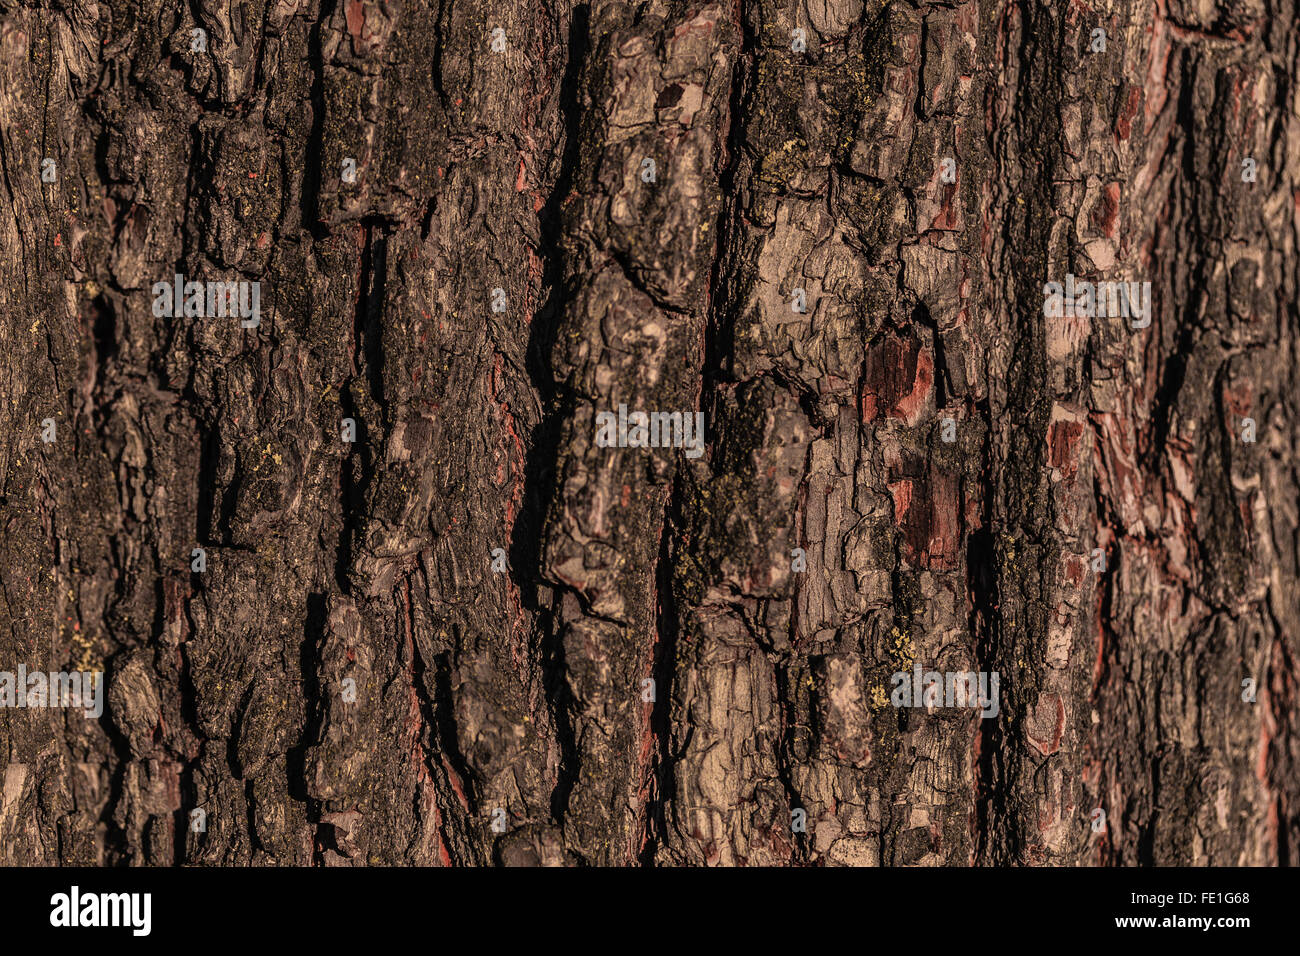 tree bark photo Stock Photo